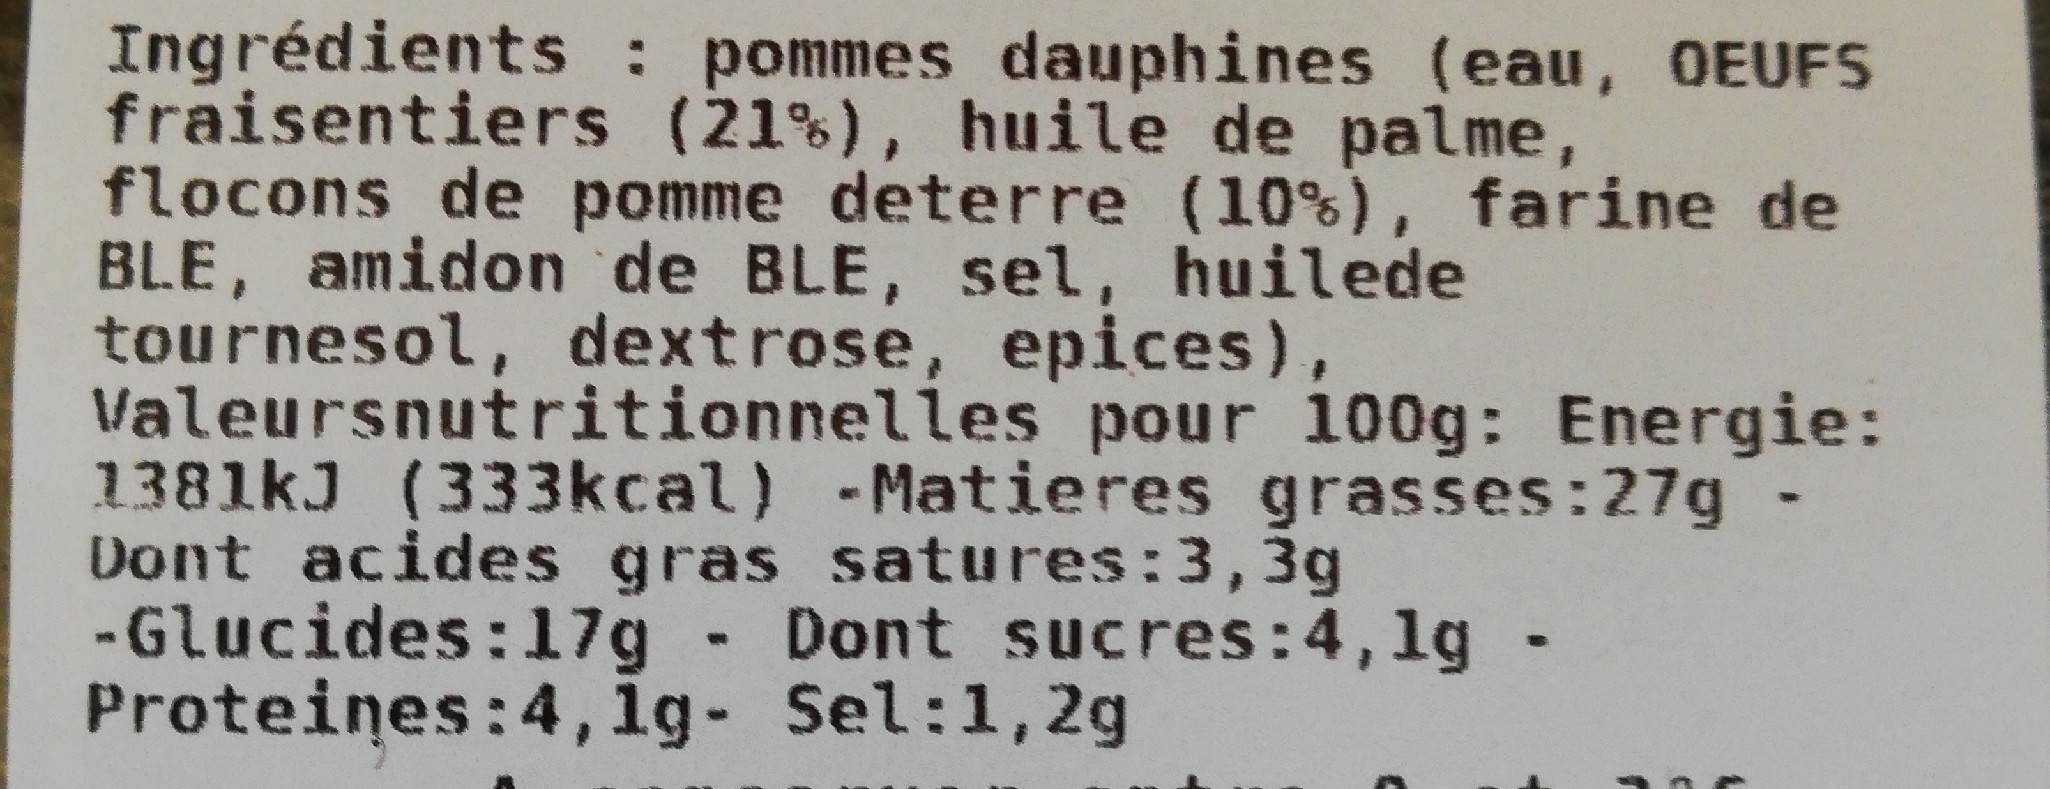 Pommes dauphine - Ingredients - fr